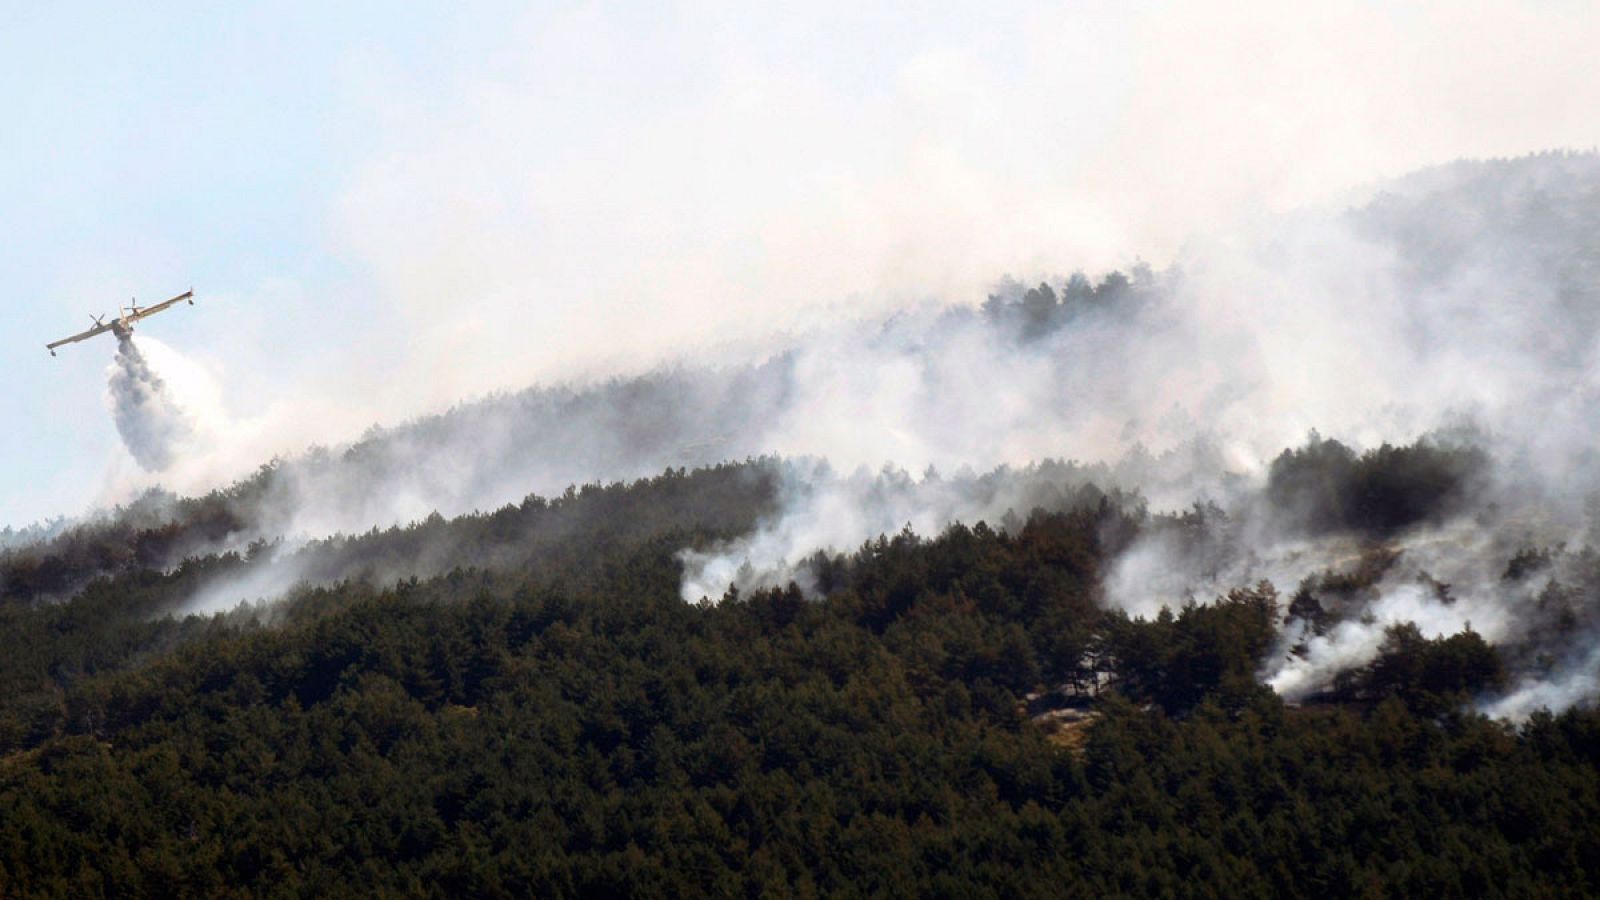 Los servicios de emergencia trabajan para frenar el incendio de La Granja y estabilizan el de Miraflores